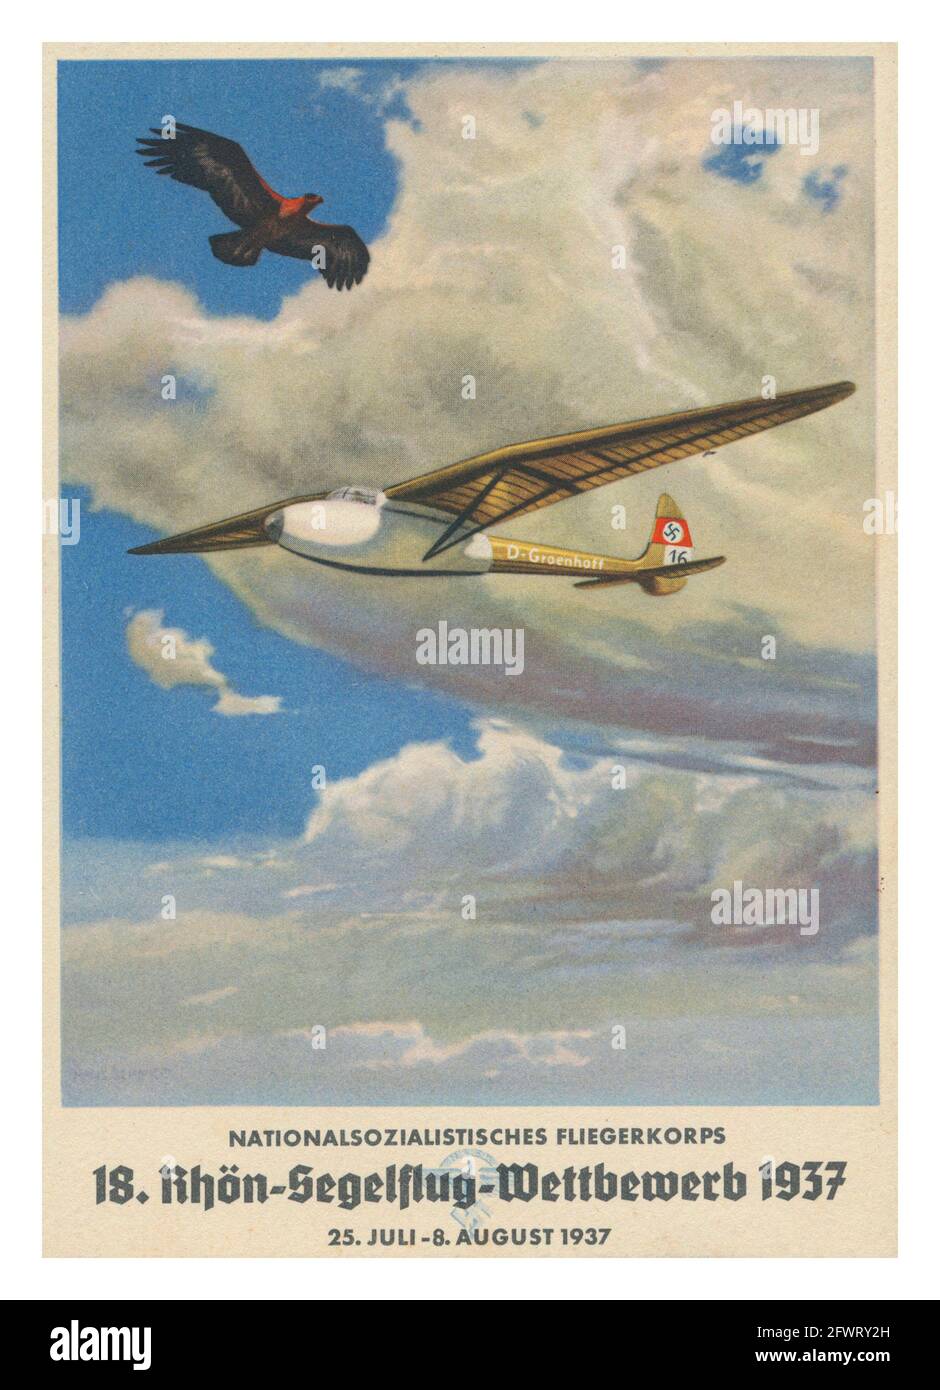 FLIEGERKORPS 1937, Poster di Propaganda nazista 'National Socialist Fliegerkorps NSFK 18 Rhön-Segelflug-Competition 1937', illustrazione del aliante 'D-Groenhoff' con la Swastika nazista e aquila nel cielo, preparazione e addestramento per la Germania nazista Luftwaffe WW2 Foto Stock